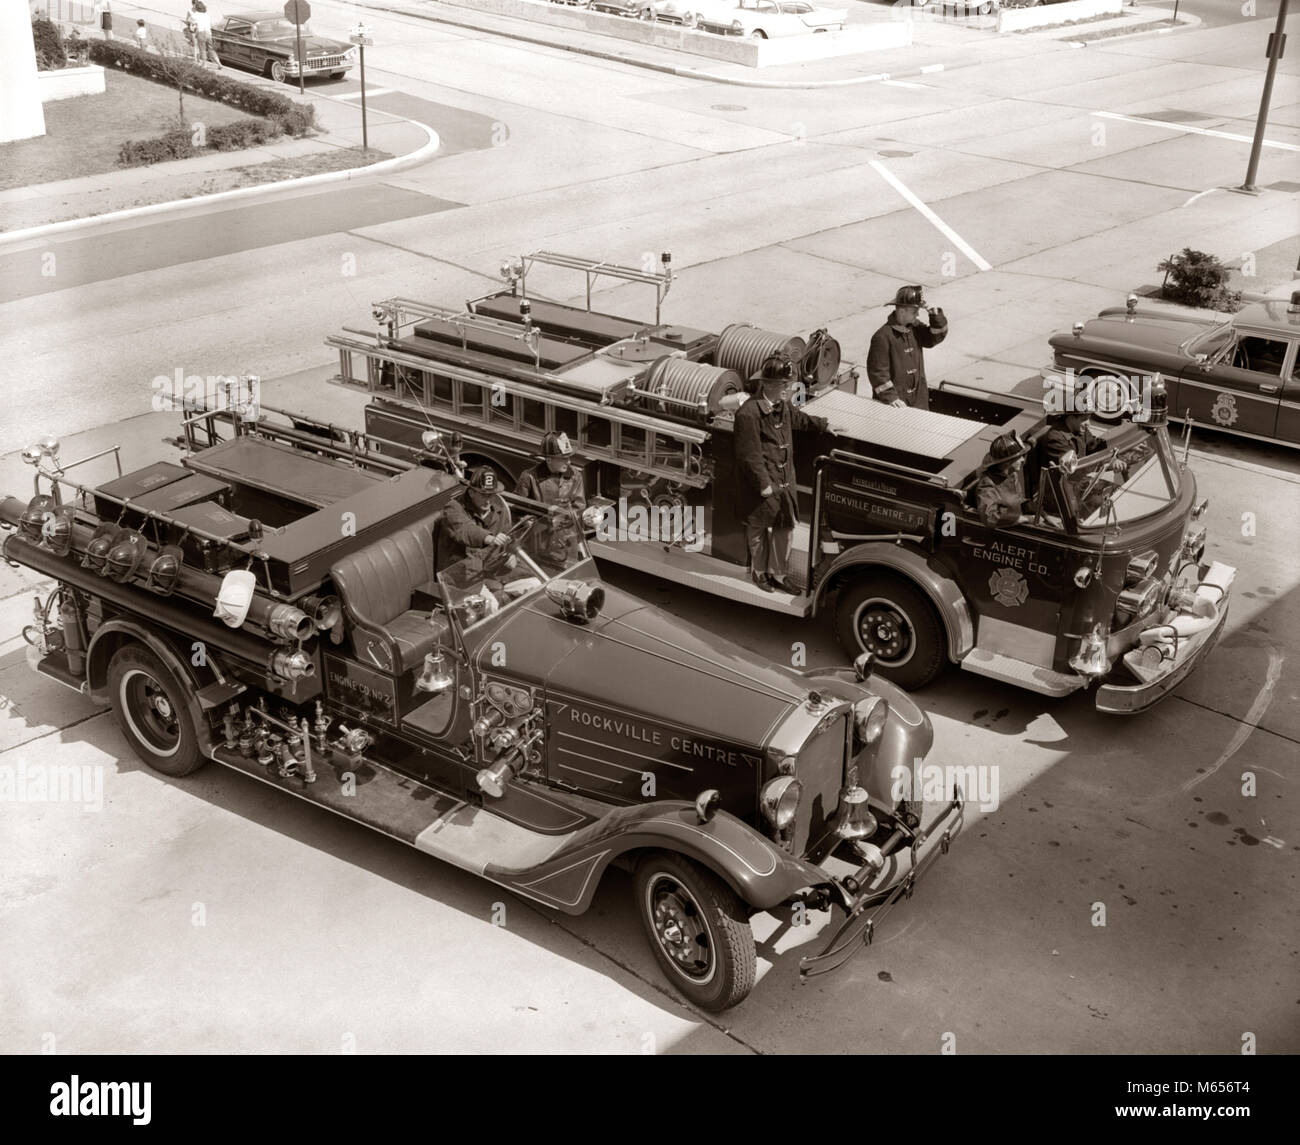 1960 VISTA SUPERIOR DE dos camiones de bomberos estacionado en la estación de bomberos en el camión usando equipo de protección - F440 HAR001 HARS estacionarse camiones bombero desastre ocupación alto